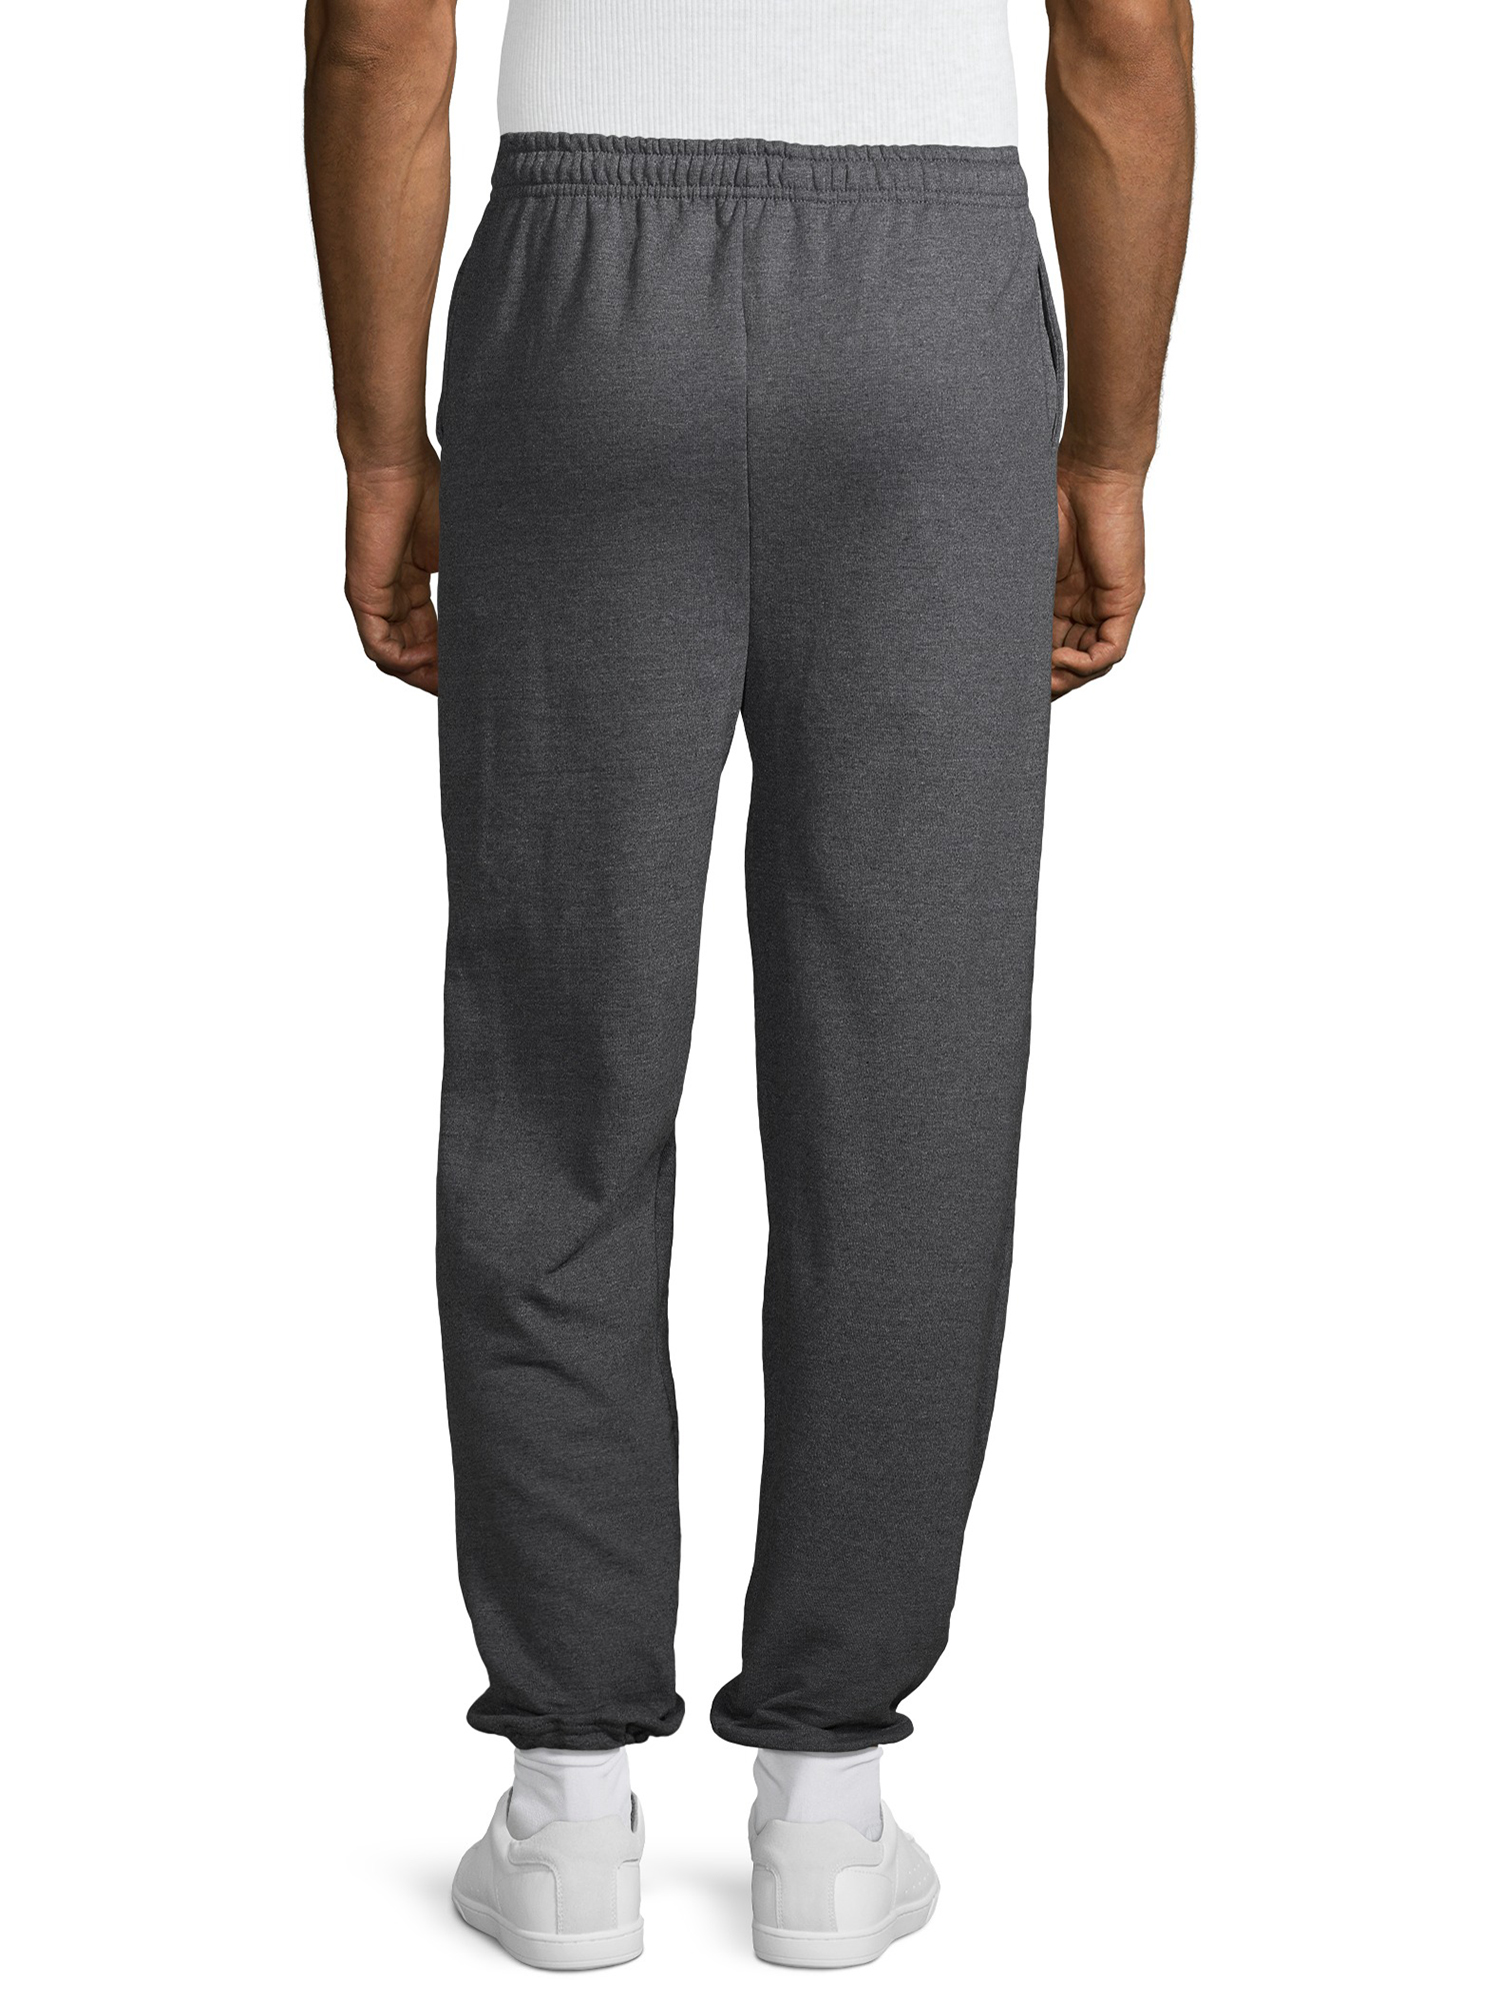 Gildan Men's Fleece Elastic Bottom Pocketed Sweatpants, up to Size 2XL - image 4 of 6